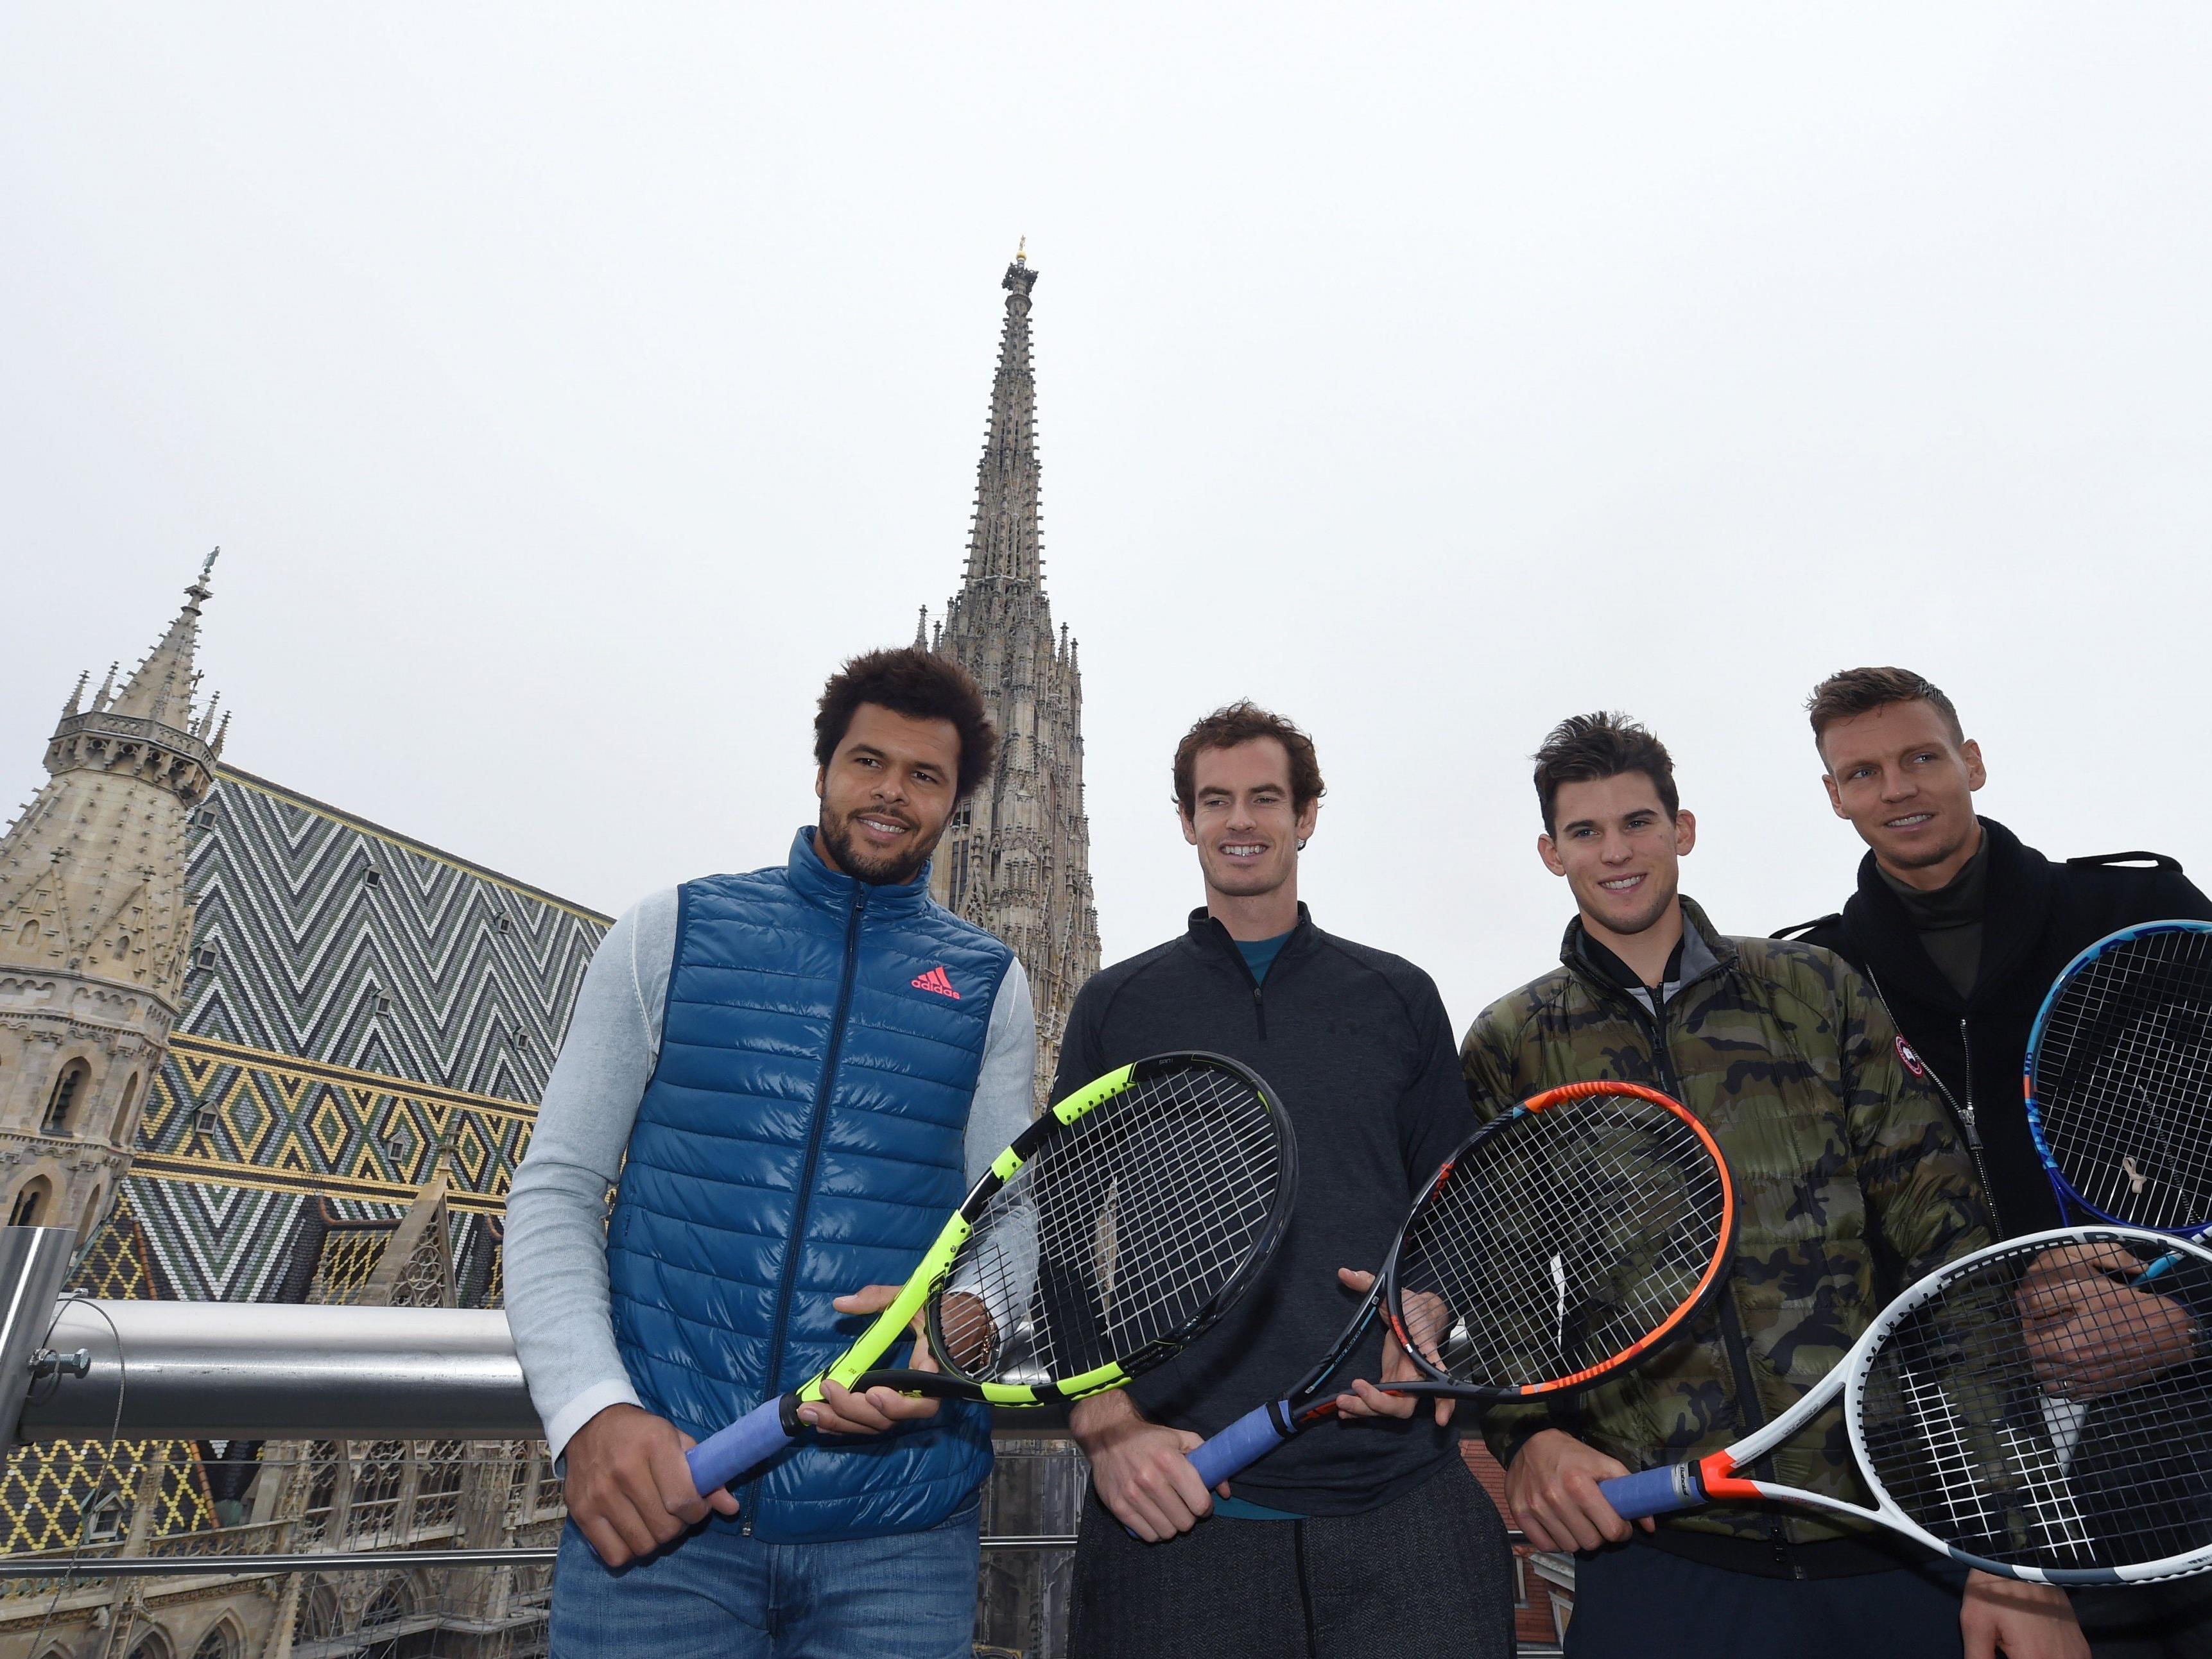 v.l.: Jo-Wilfried Tsonga, Andy Murray, Dominic Thiem und Tomas Berdych im Rahmen der Erste Bank Open "Tie Break Tens" in Wien